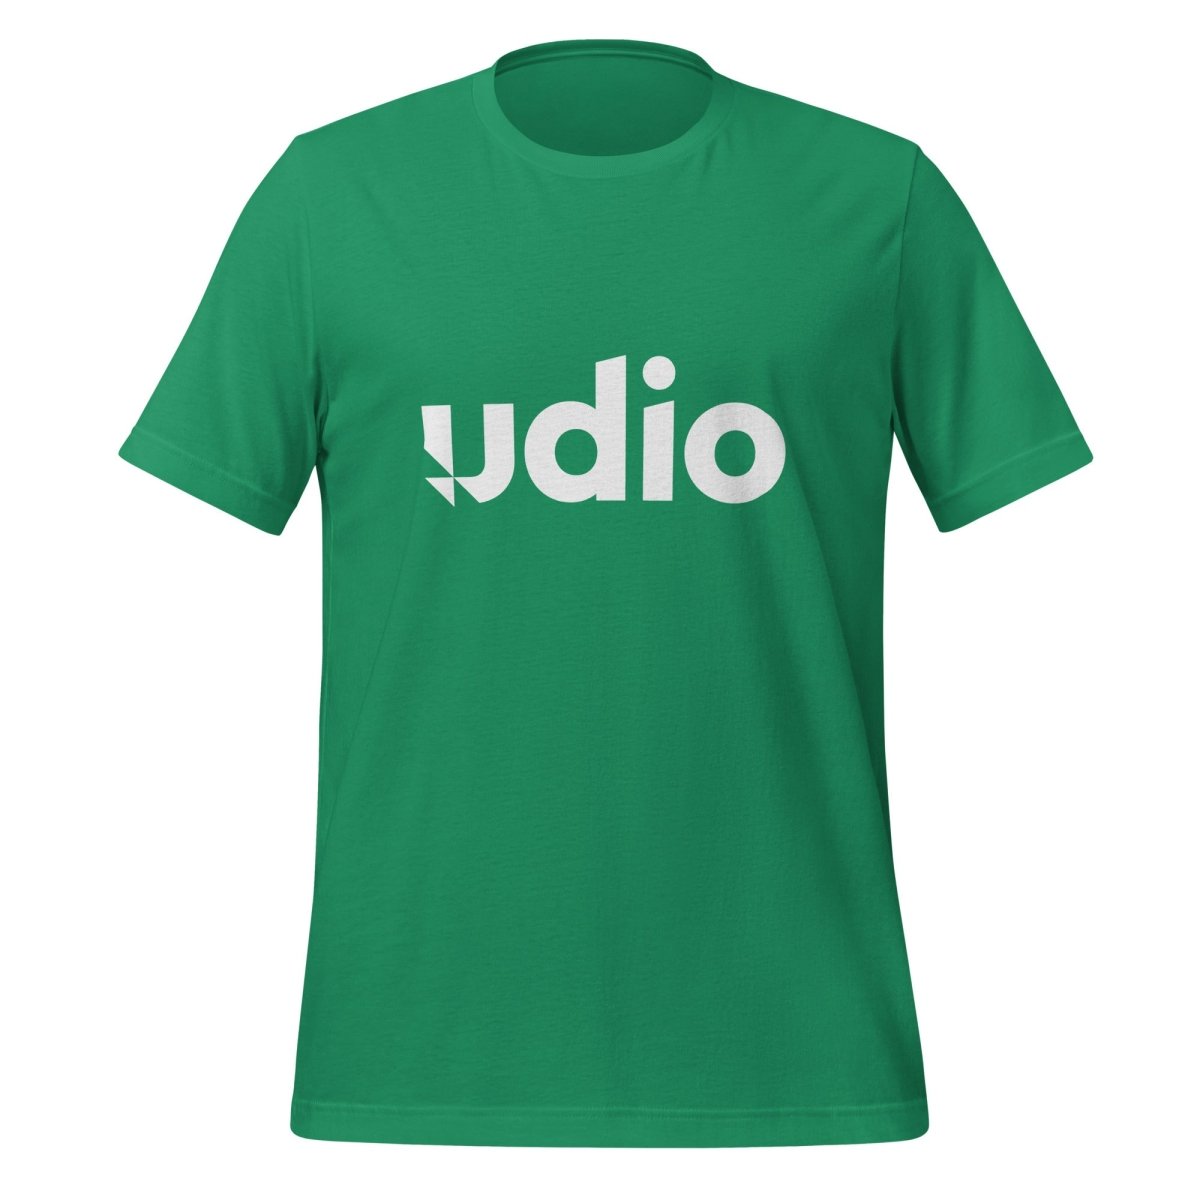 Udio Logo T - Shirt (unisex) - Kelly - AI Store